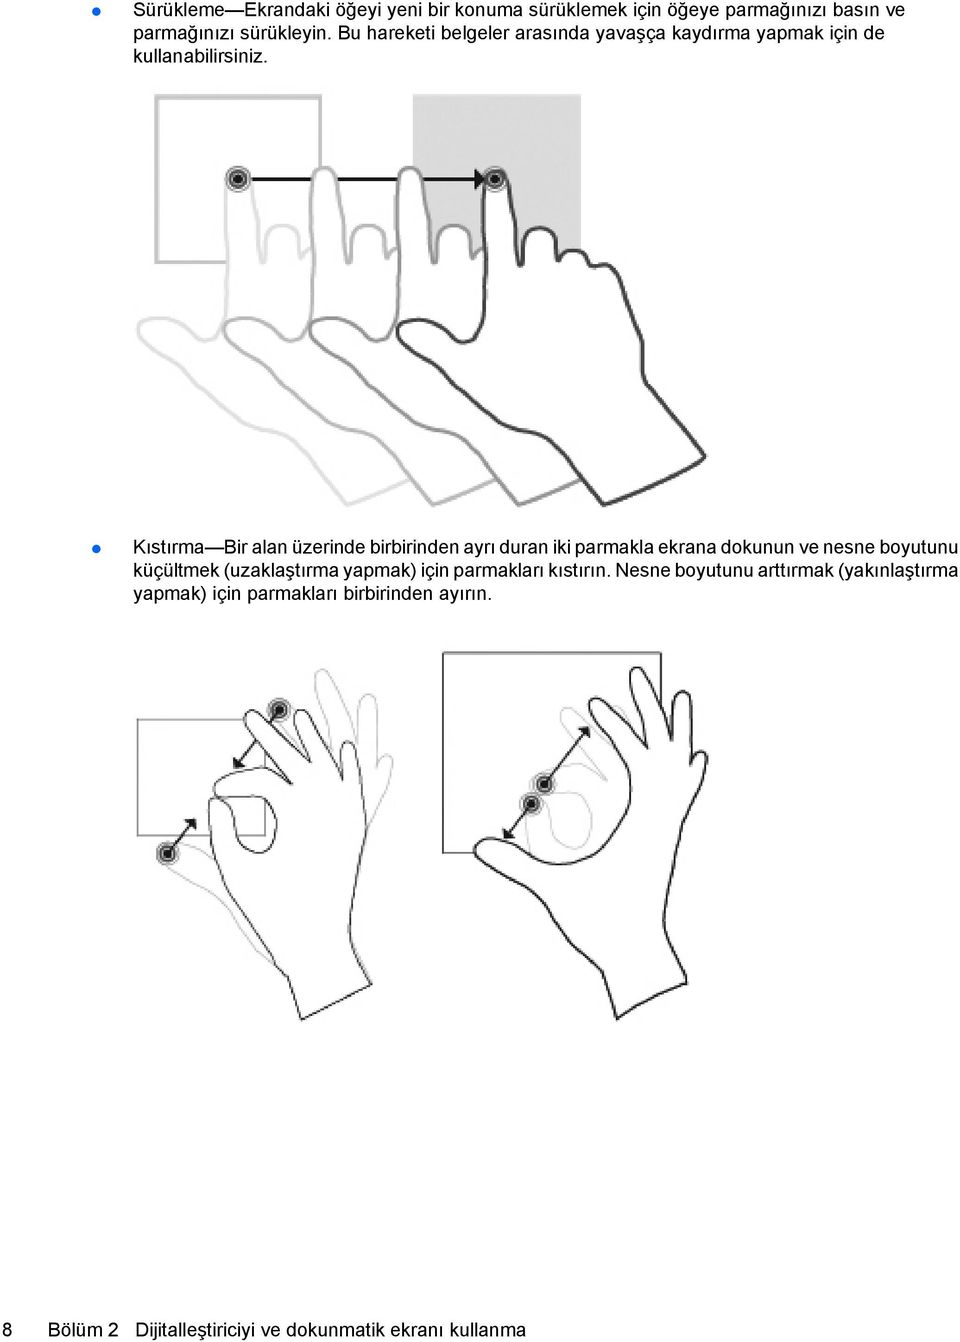 Kıstırma Bir alan üzerinde birbirinden ayrı duran iki parmakla ekrana dokunun ve nesne boyutunu küçültmek (uzaklaştırma